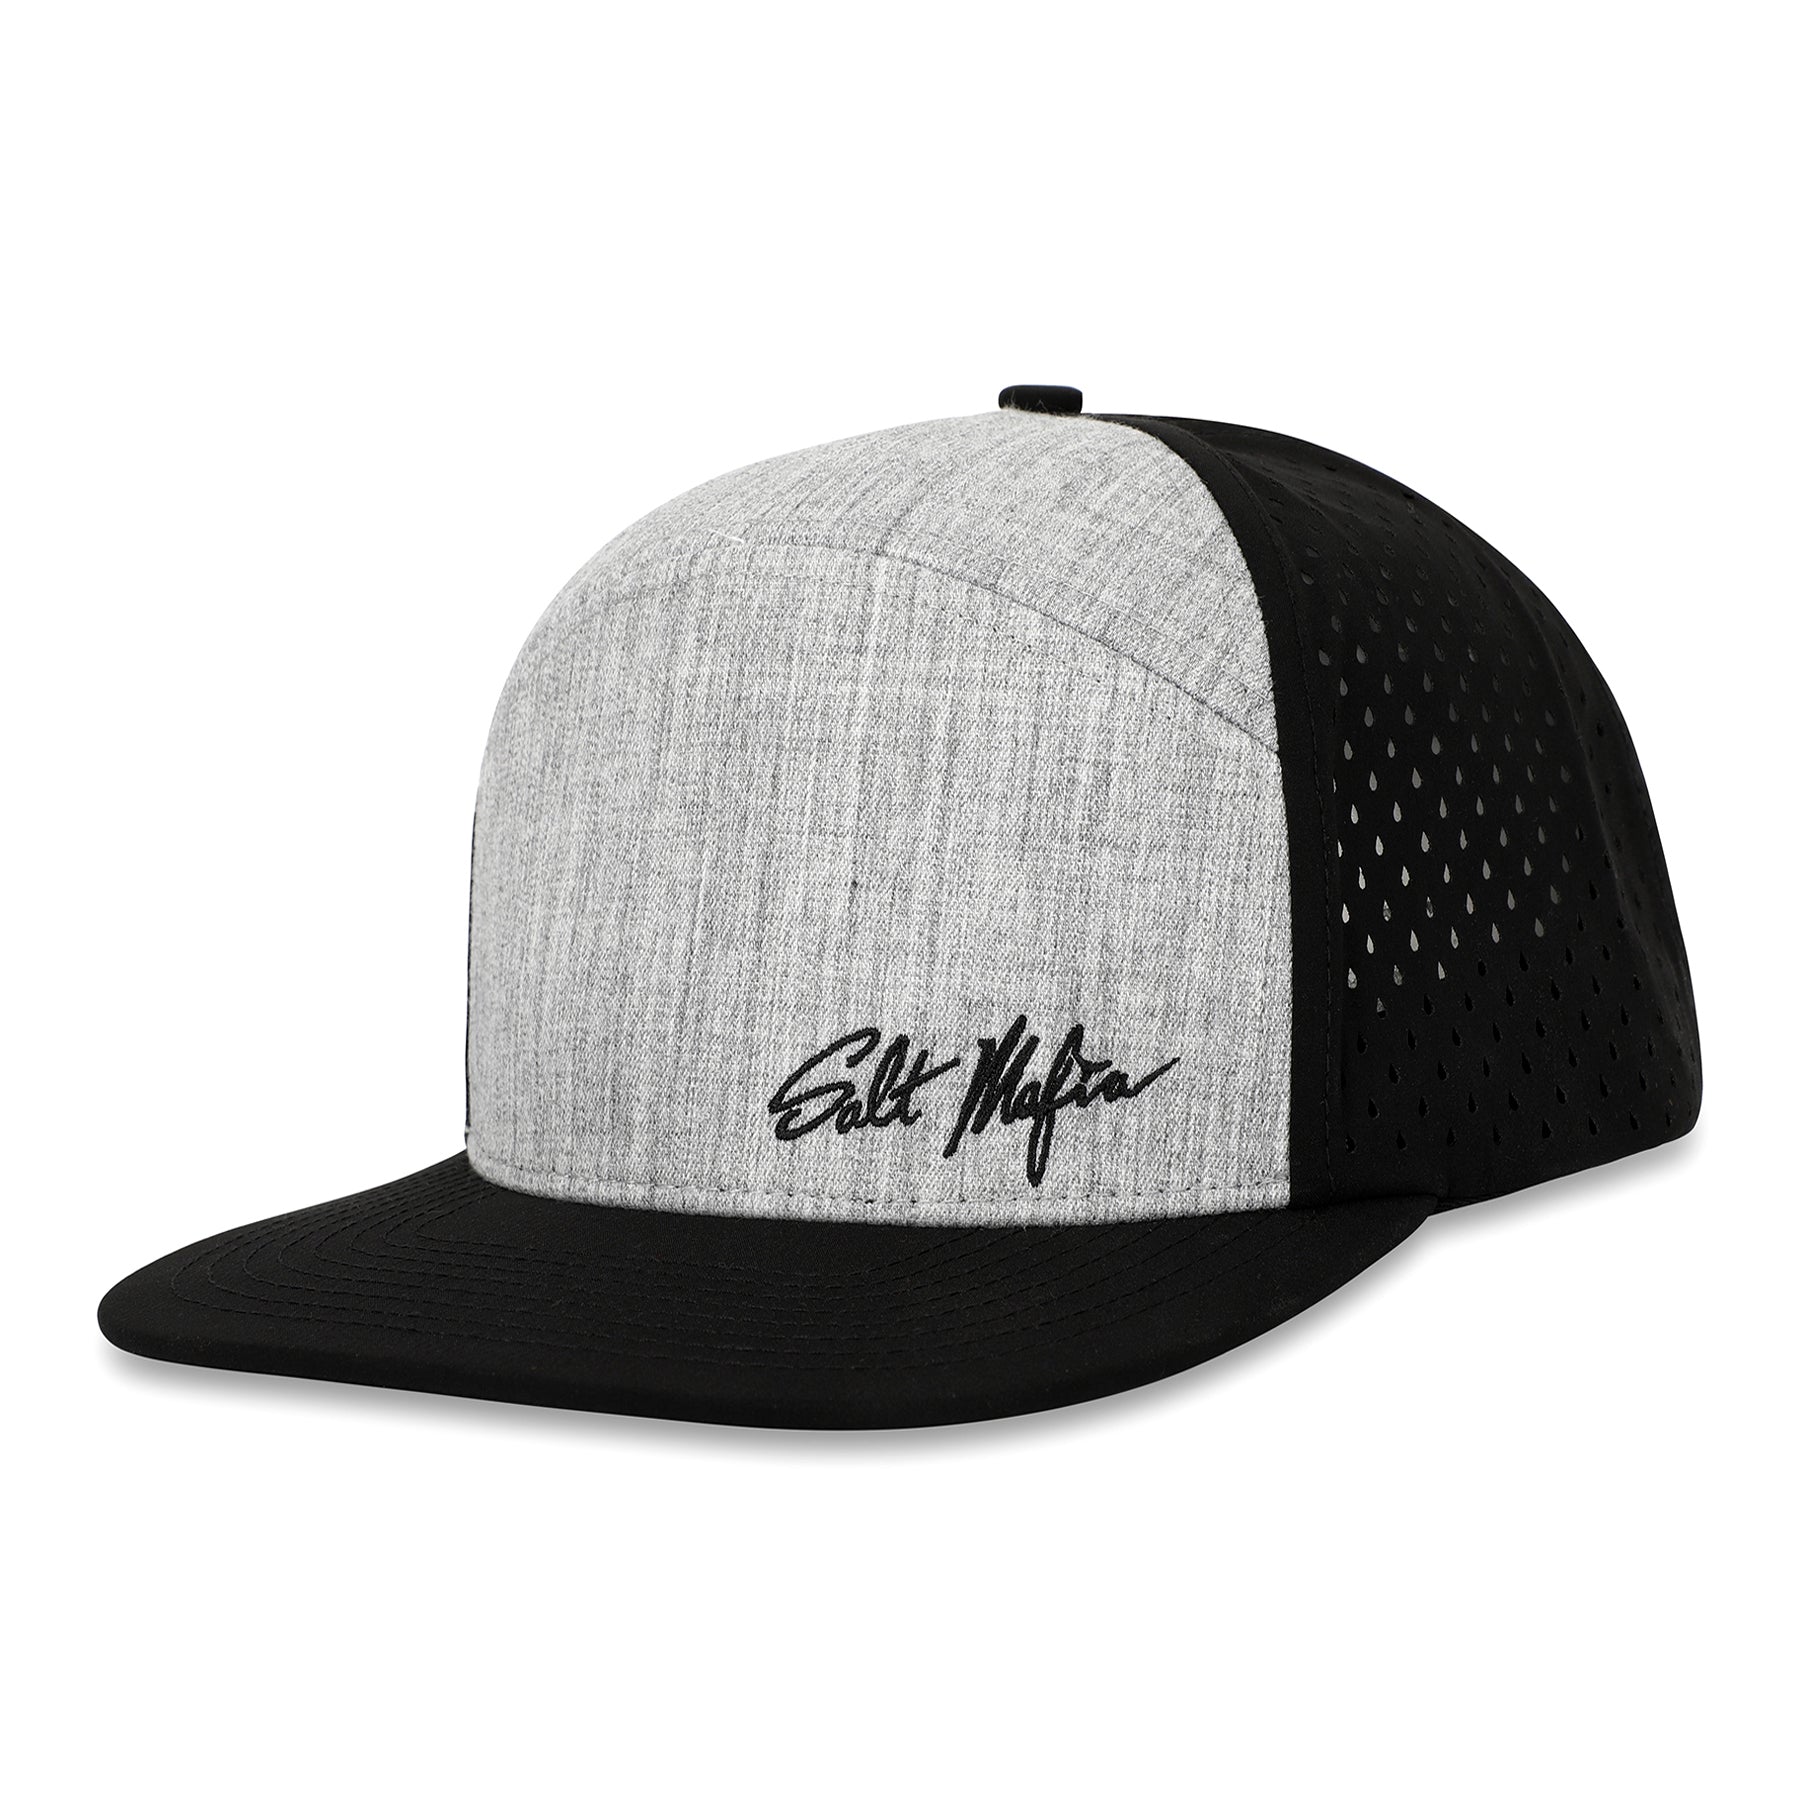 Salt Mafia Performance Hat - The Thread - 7-Flat